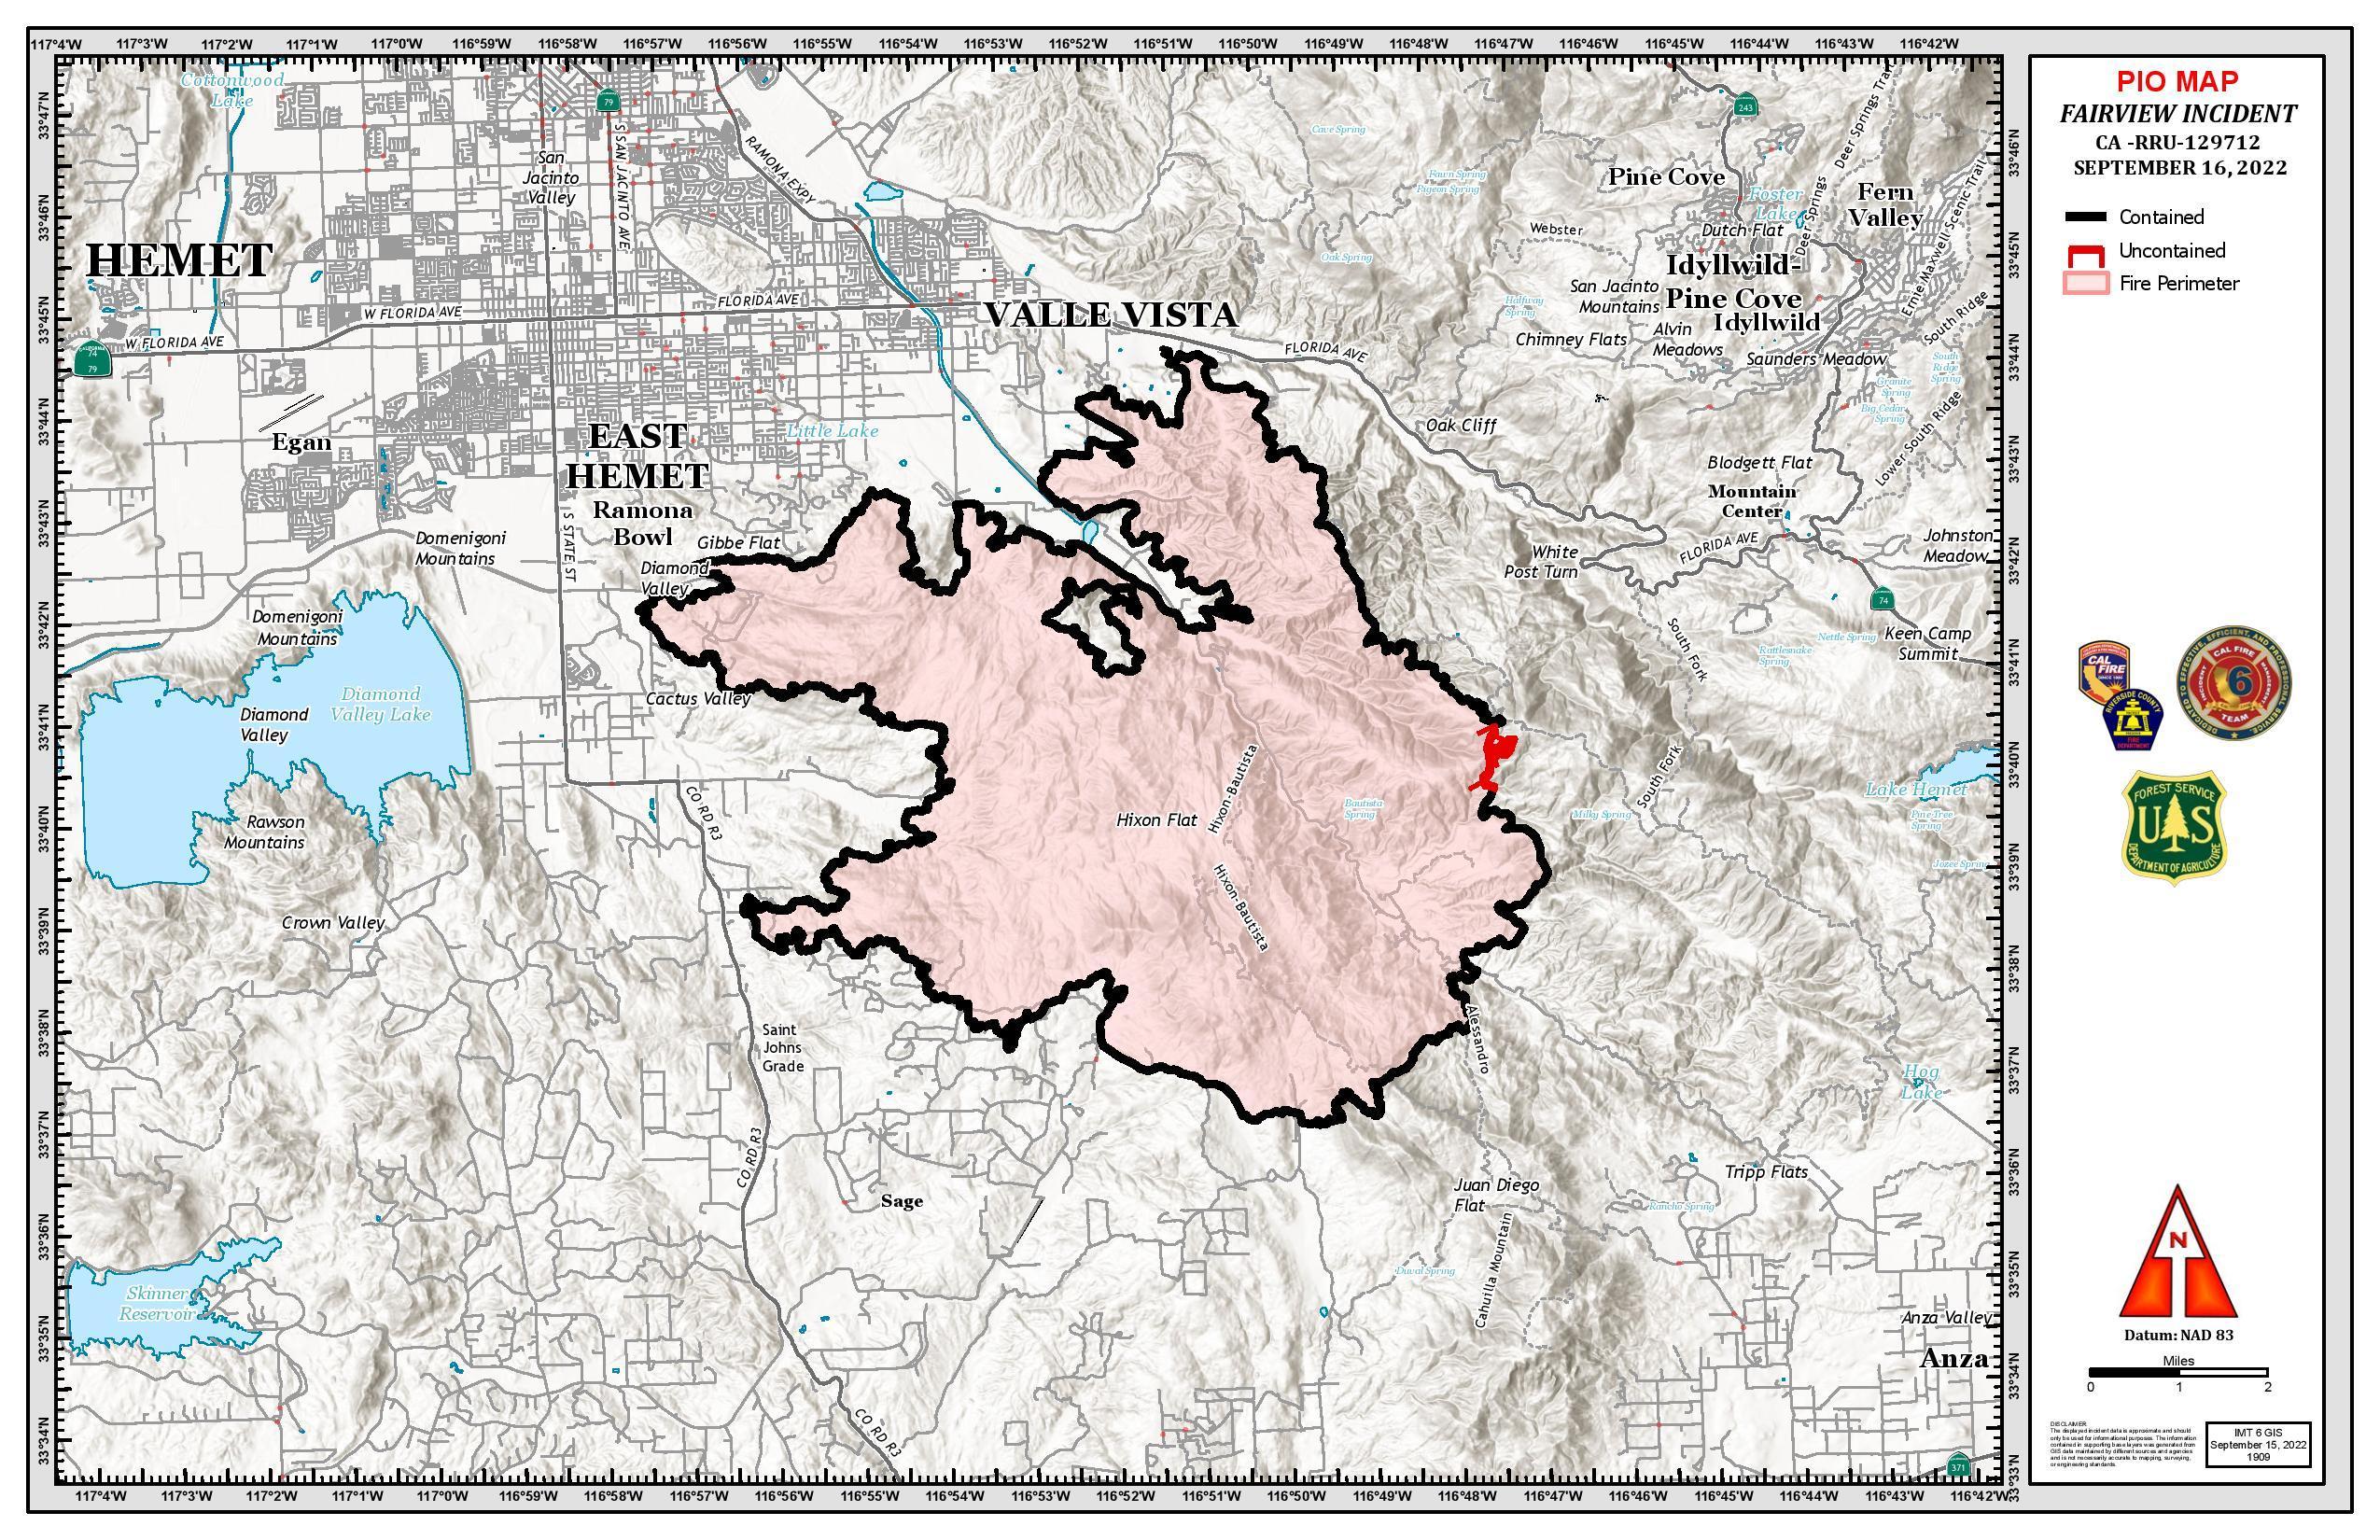 Fairview Fire Public Info Map, Sept 16. 2022